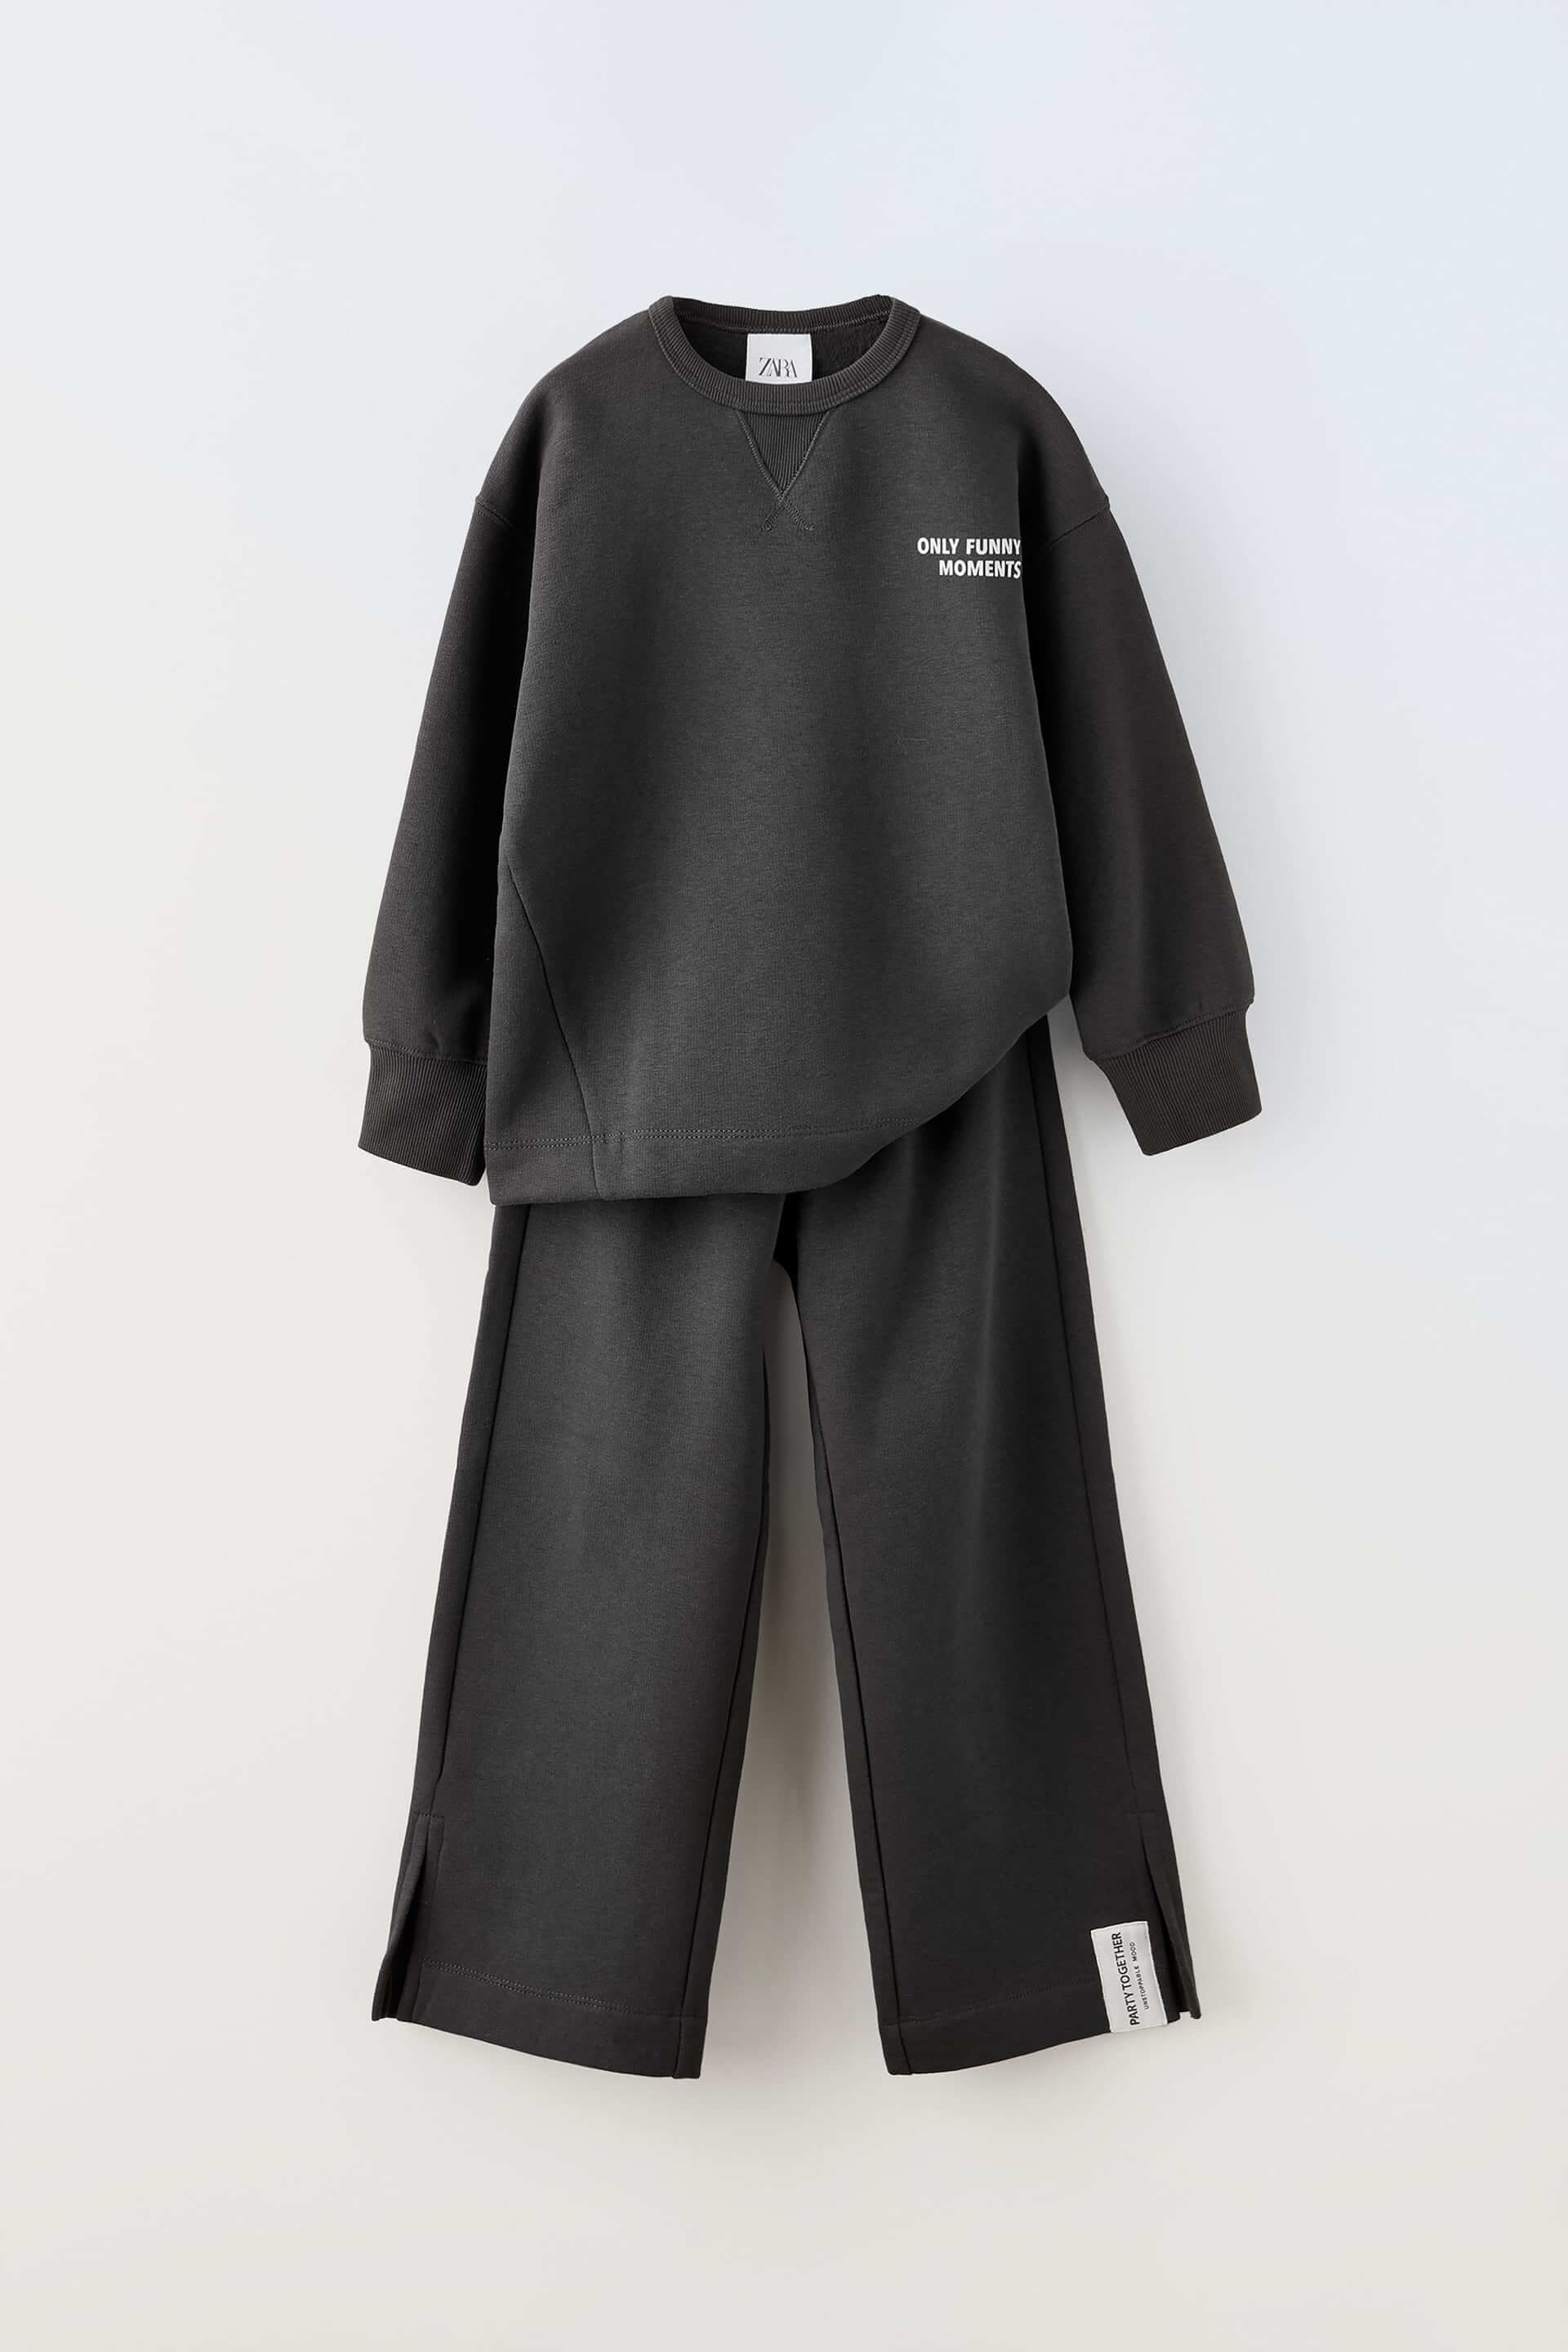 Комплект из толстовки и брюк Zara Plush Slogan, 2 предмета, антрацитово-серый комплект zara kids plush 2 предмета темно серый